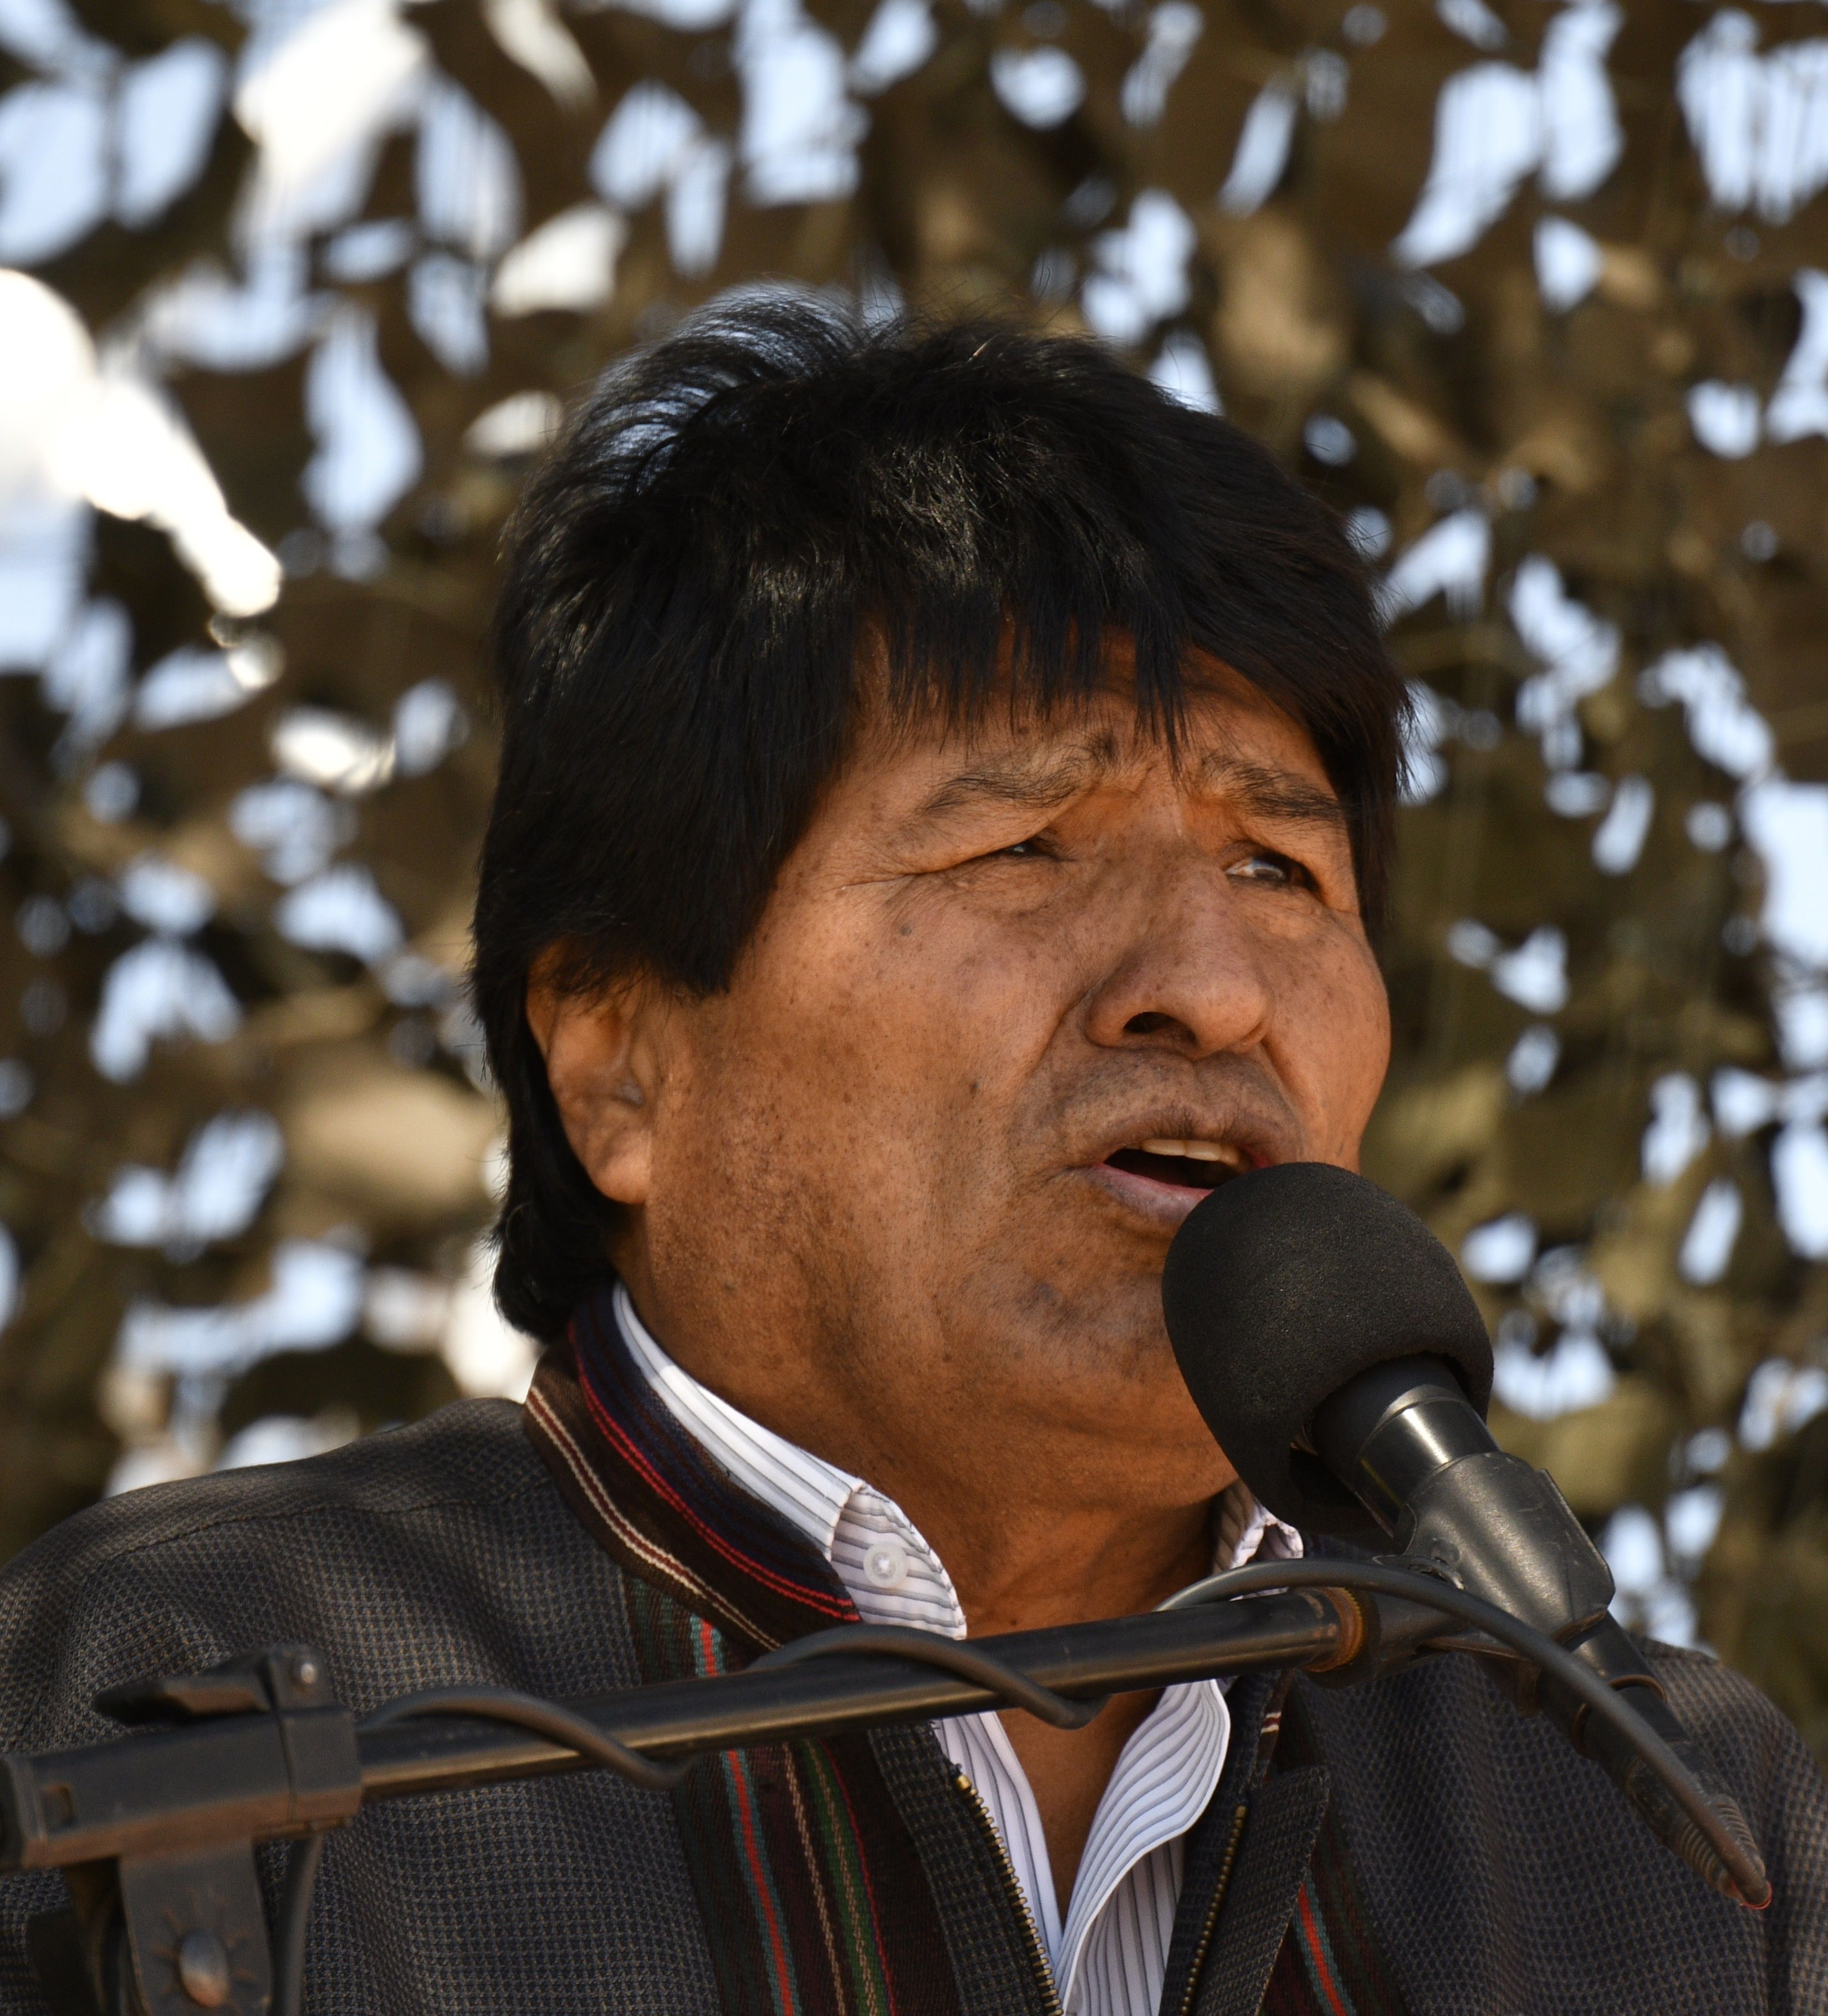 رئيس بوليفيا يلقى كلمة خلال إعادة تمثيل معركة لبلاده مع تشيلى